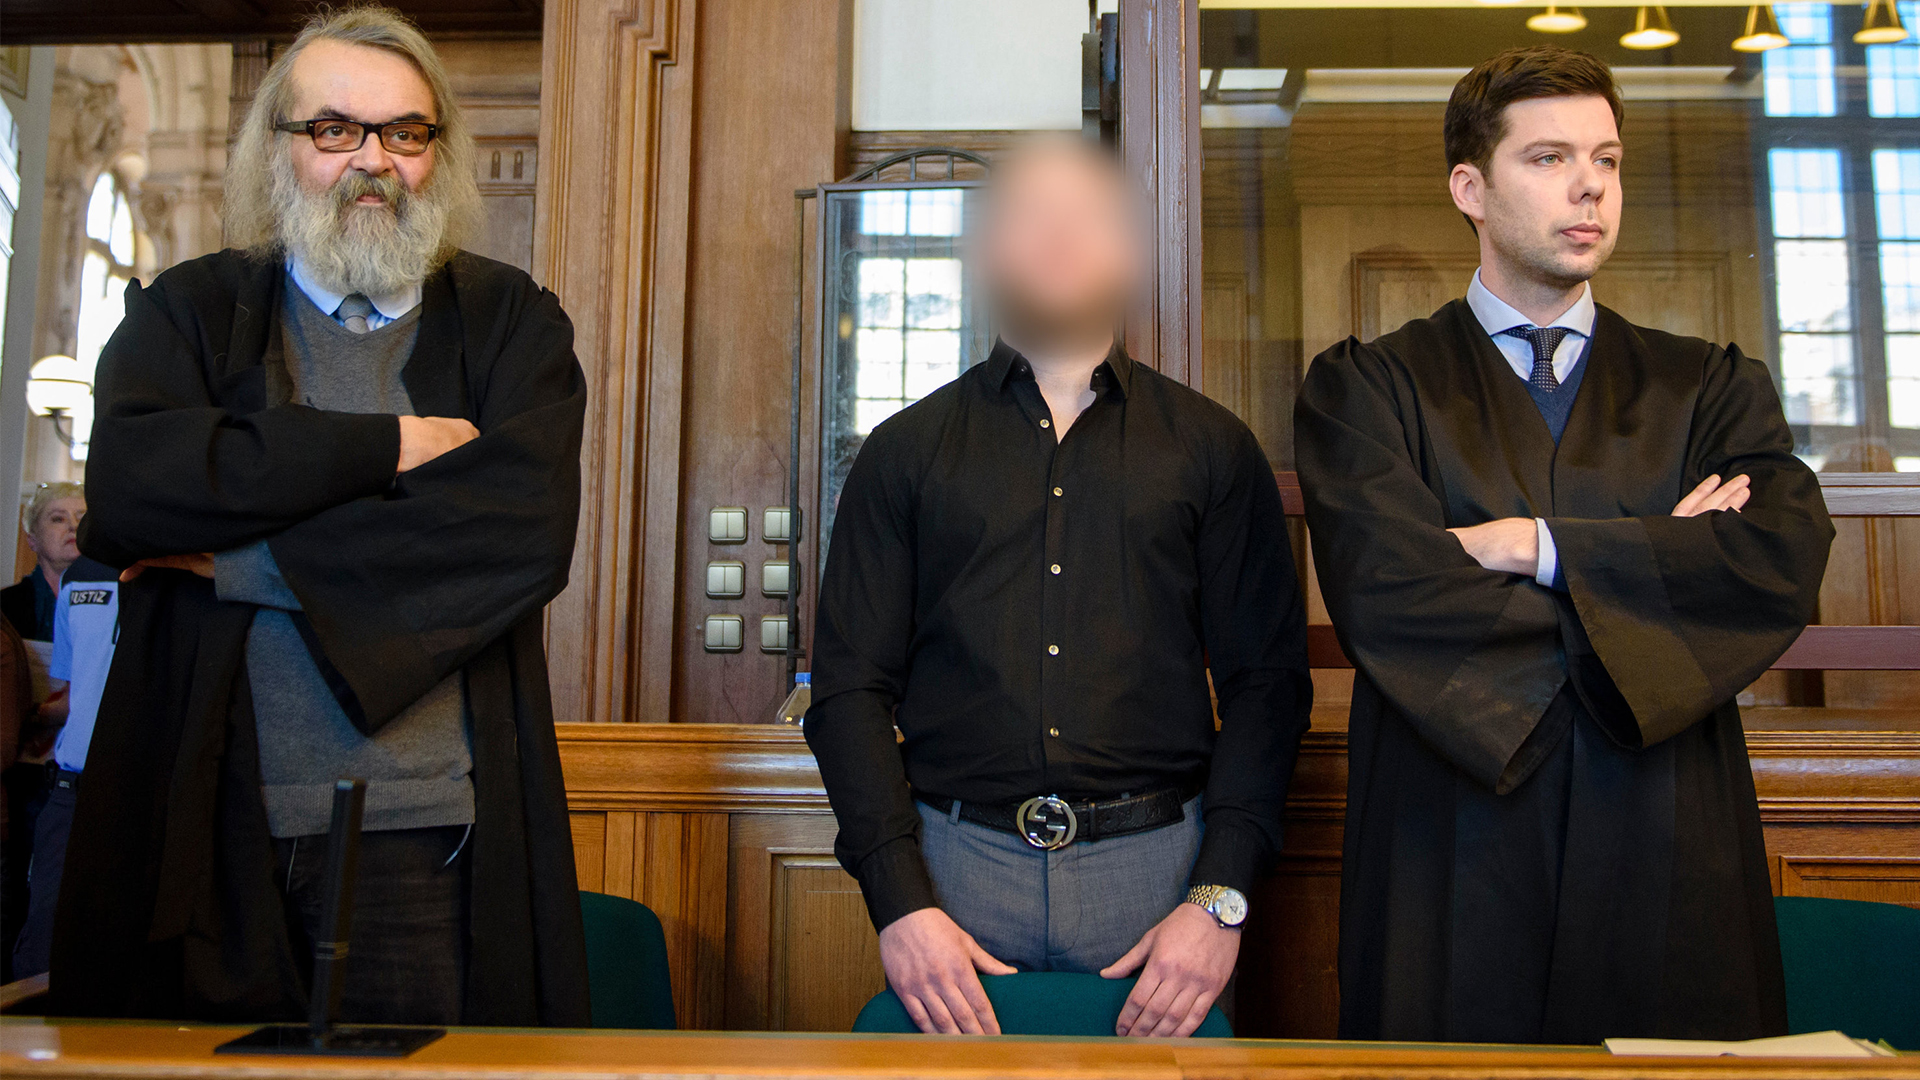 Der Angeklagte Marvin N. steht in einem Gerichtssaal des Landgerichtes Berlin zwischen seinen Anwälten und wartet auf die Urteilsverkündung | dpa